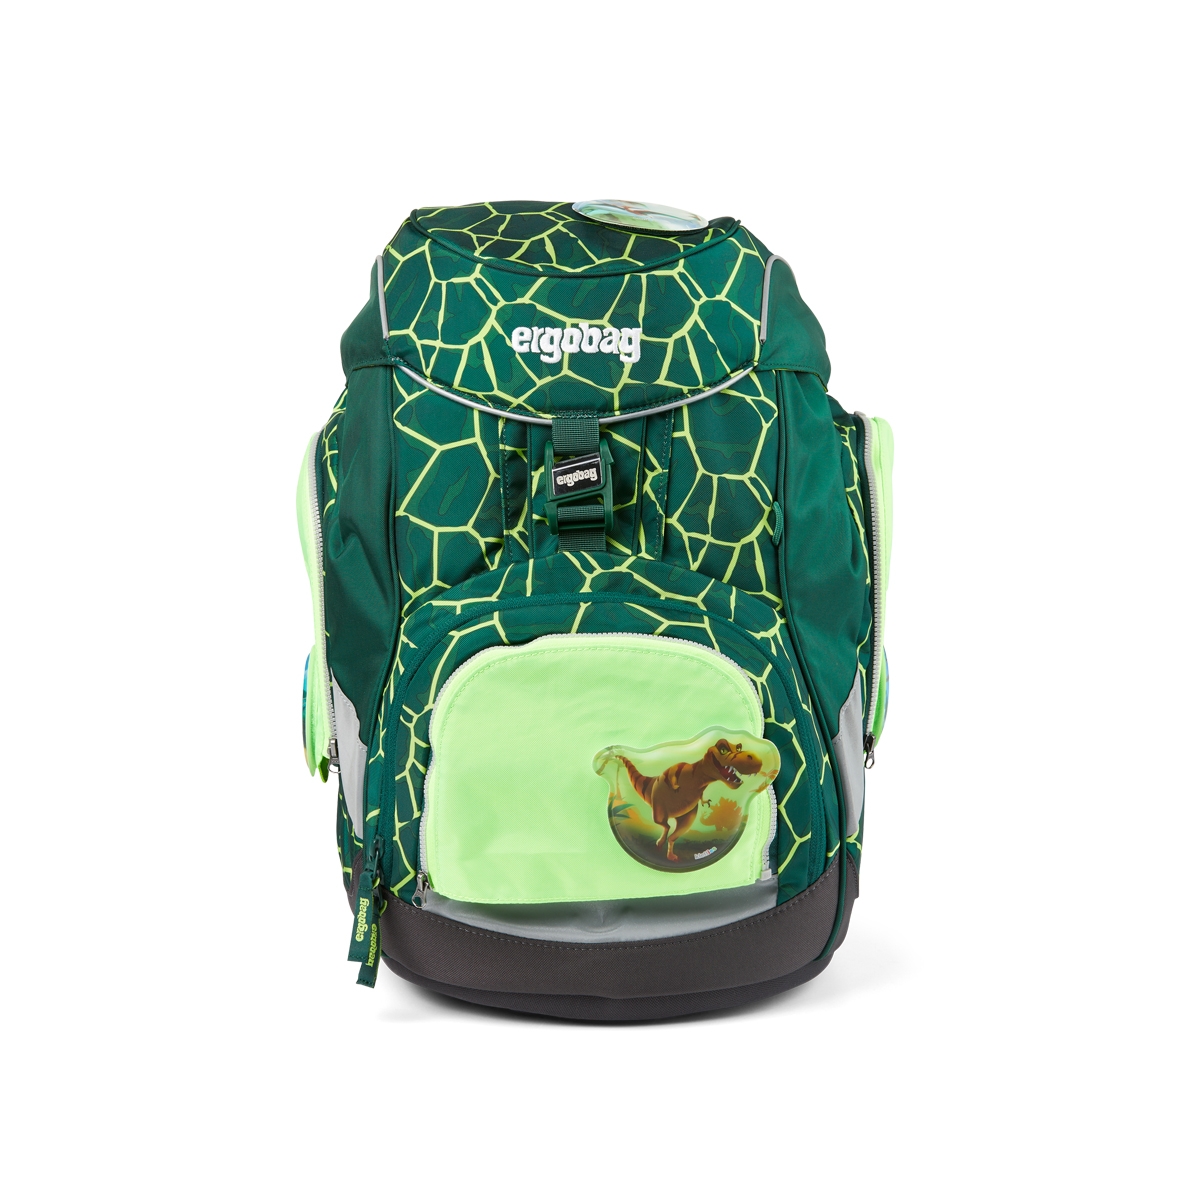 Ergobag Pack, Cubo und Cubo light Zip-Set grün 3-teilig Sicherheitsset